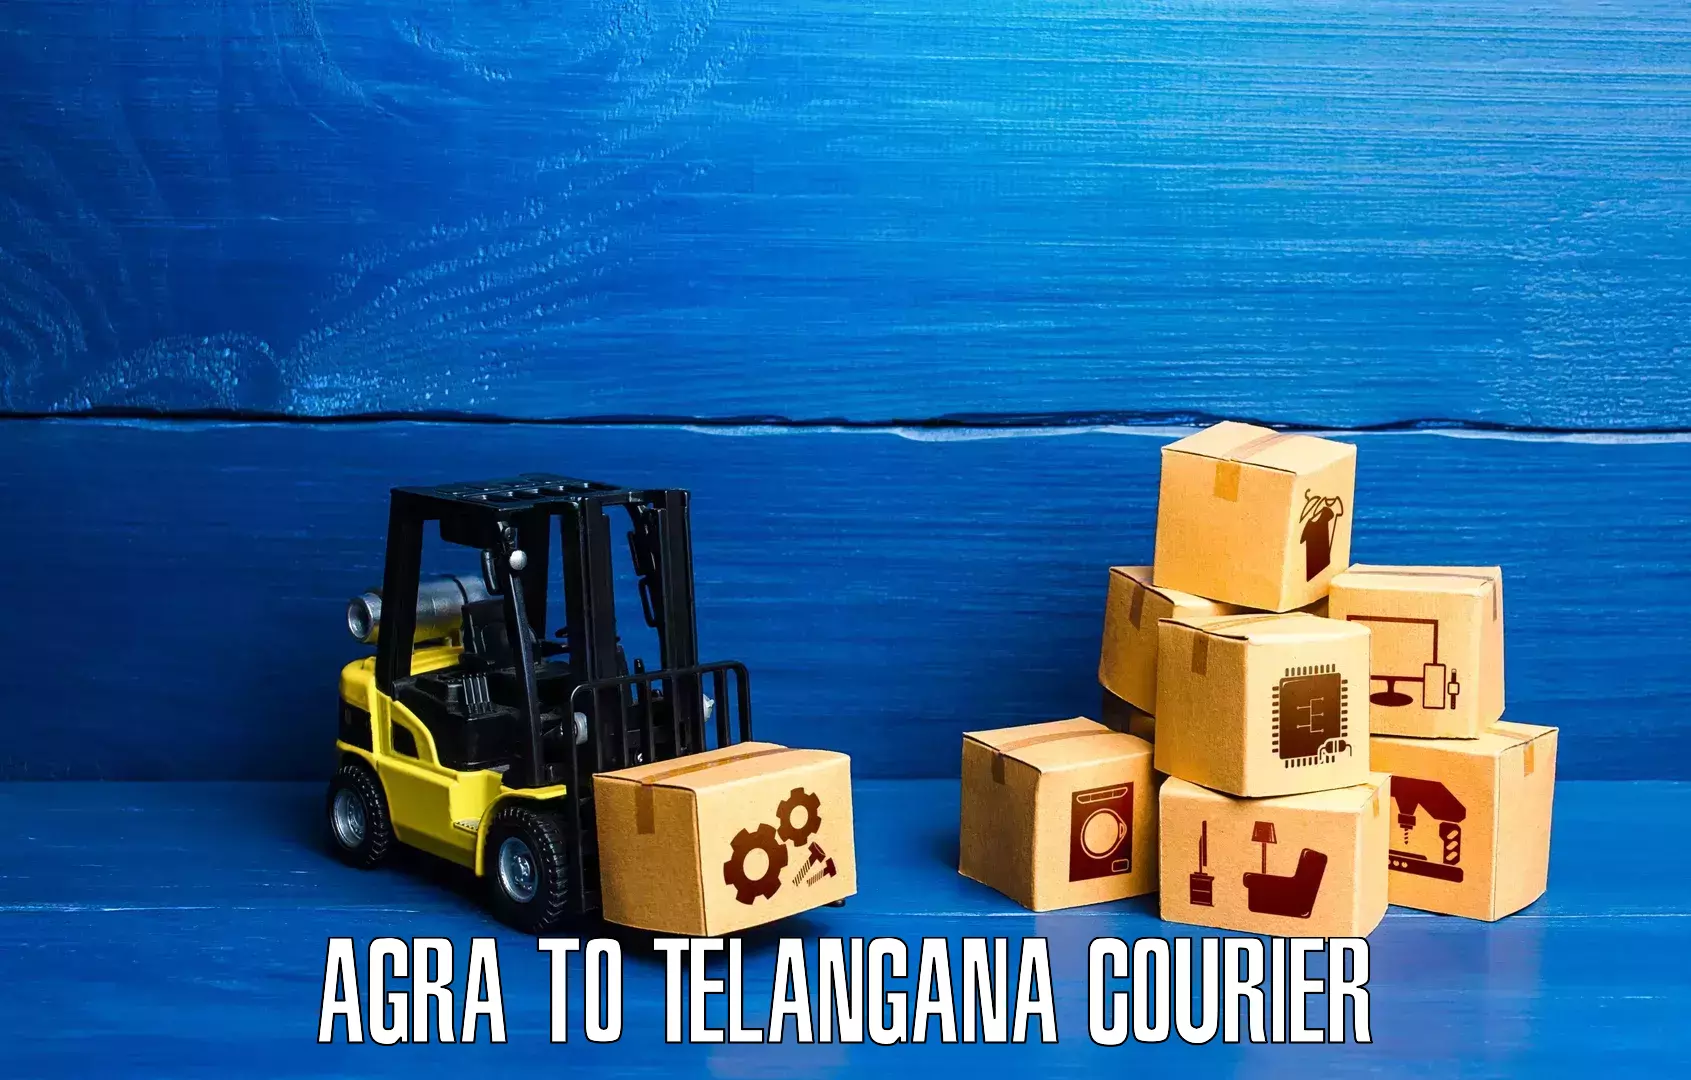 Digital courier platforms Agra to Narsampet